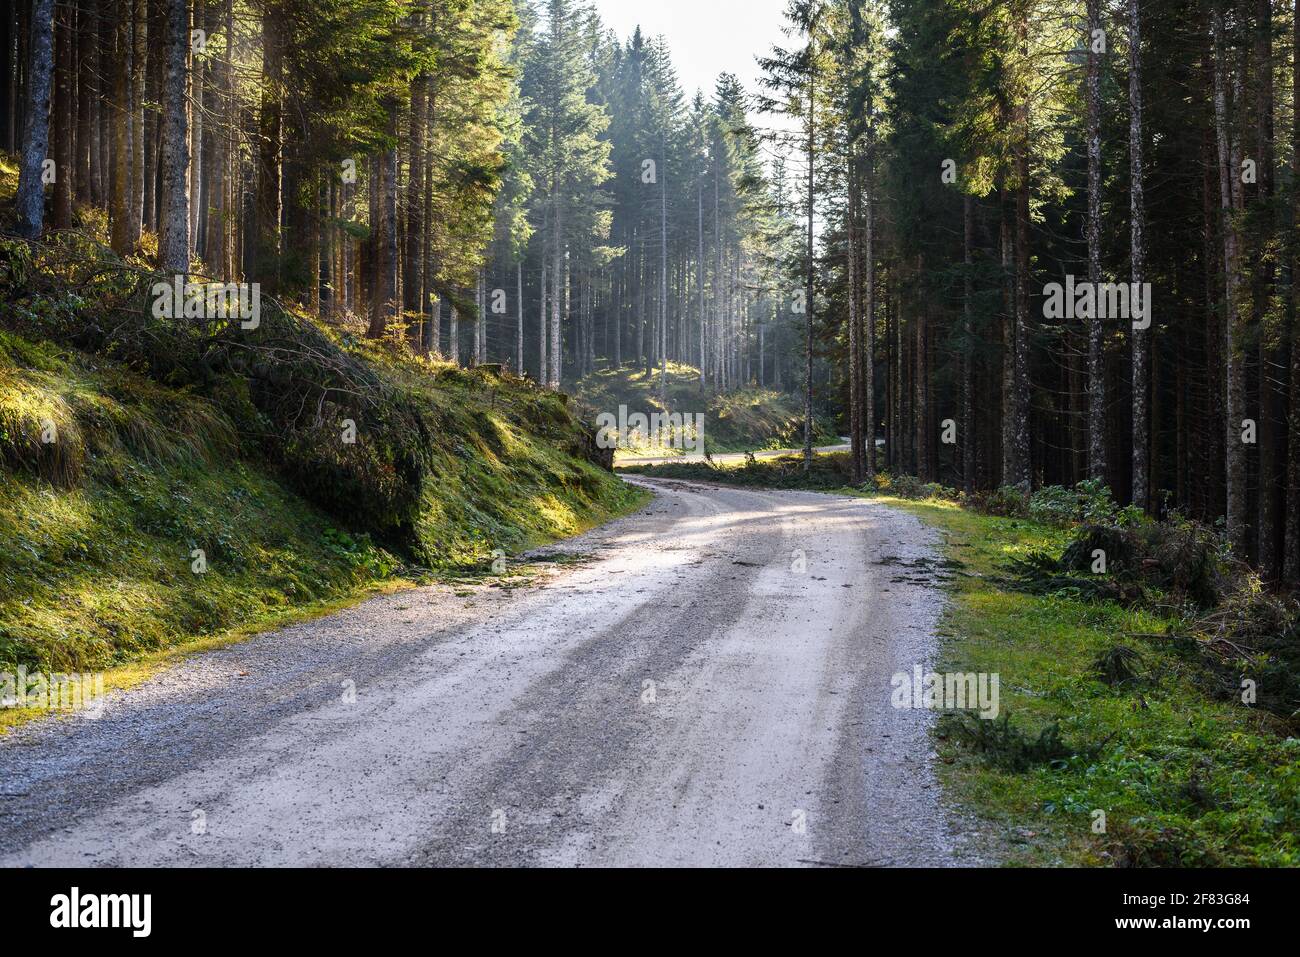 Verlassene, kurvenreiche unbefestigte Forststraße in den Europäischen Alpen an einem sonnigen Herbsttag. Comcept of Exploration. Stockfoto